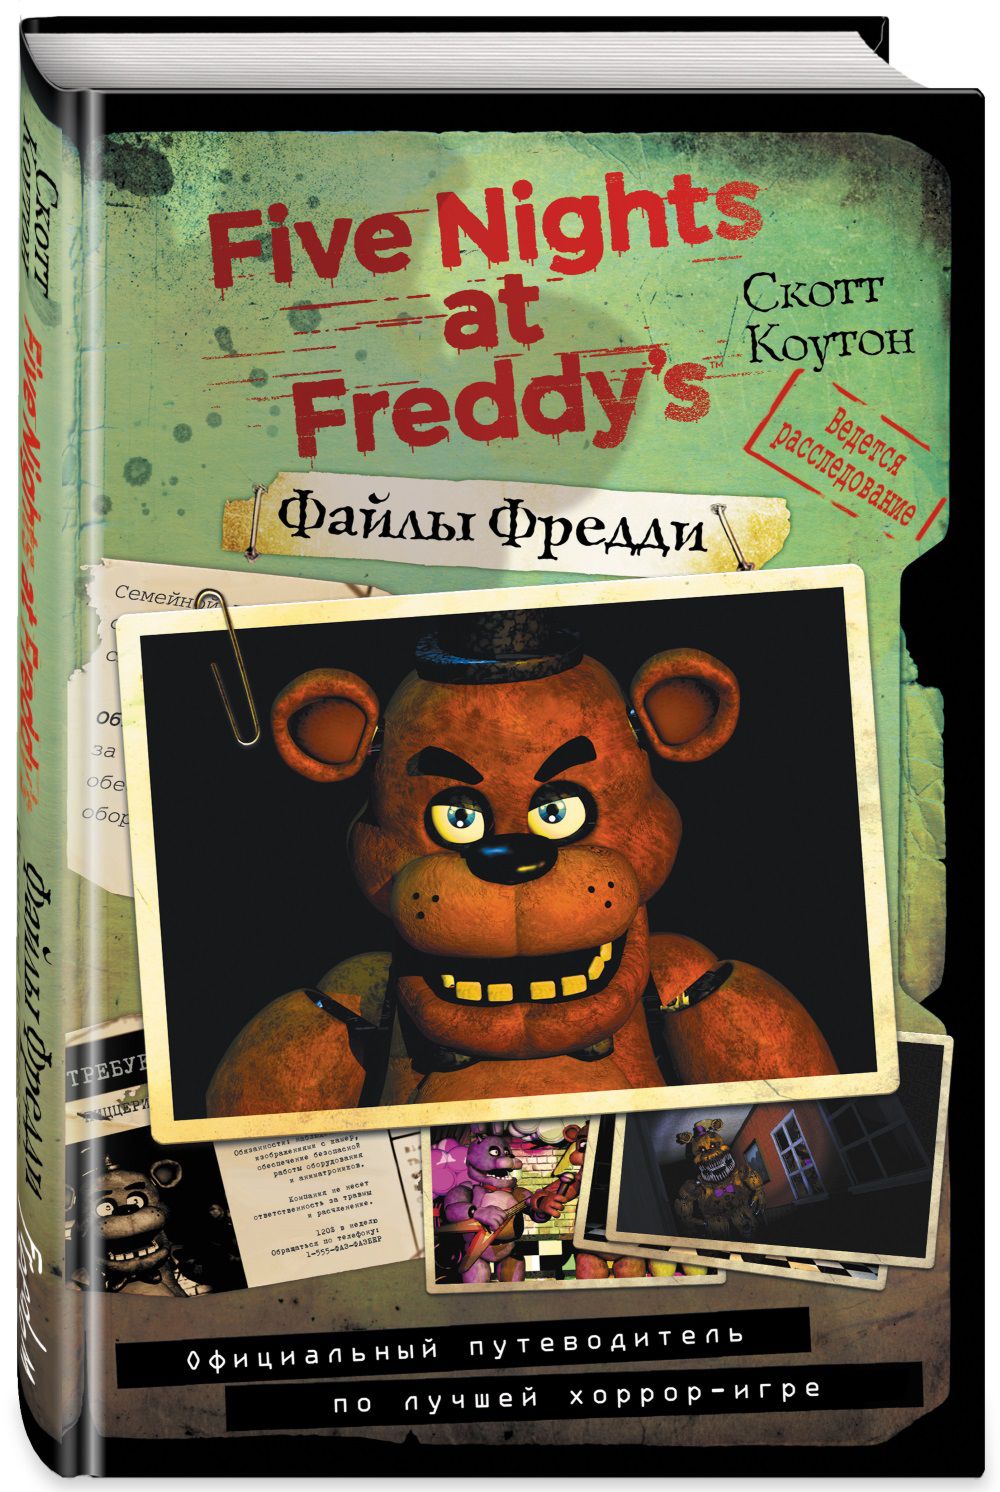 Five Nights At Freddy's: Файлы Фредди – Официальный путеводитель по лучшей хоррор-игре